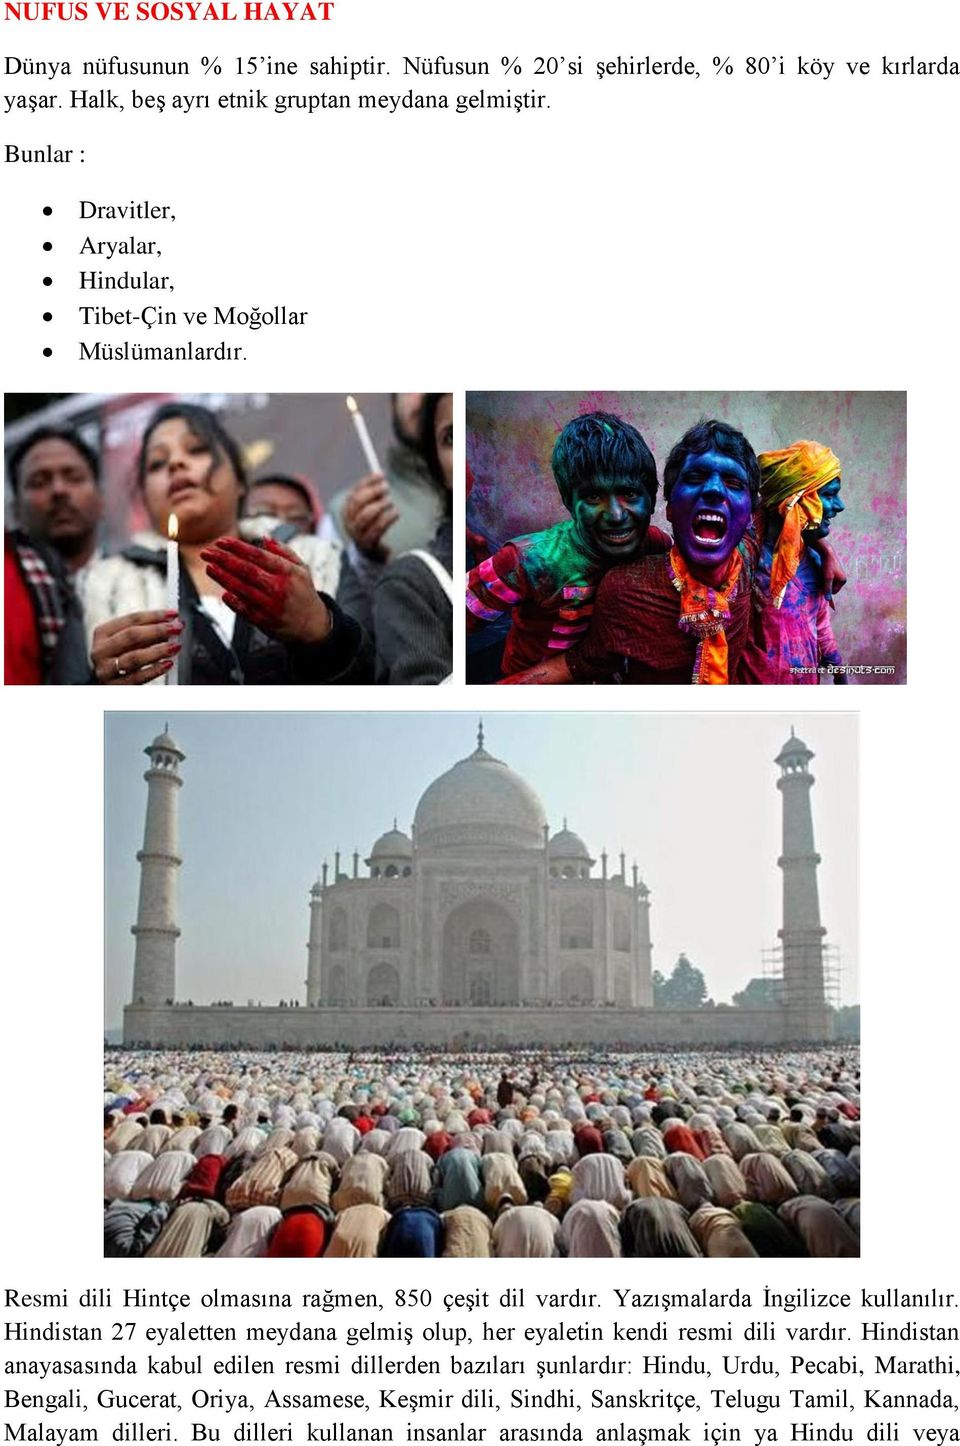 Hindistan 27 eyaletten meydana gelmiş olup, her eyaletin kendi resmi dili vardır.